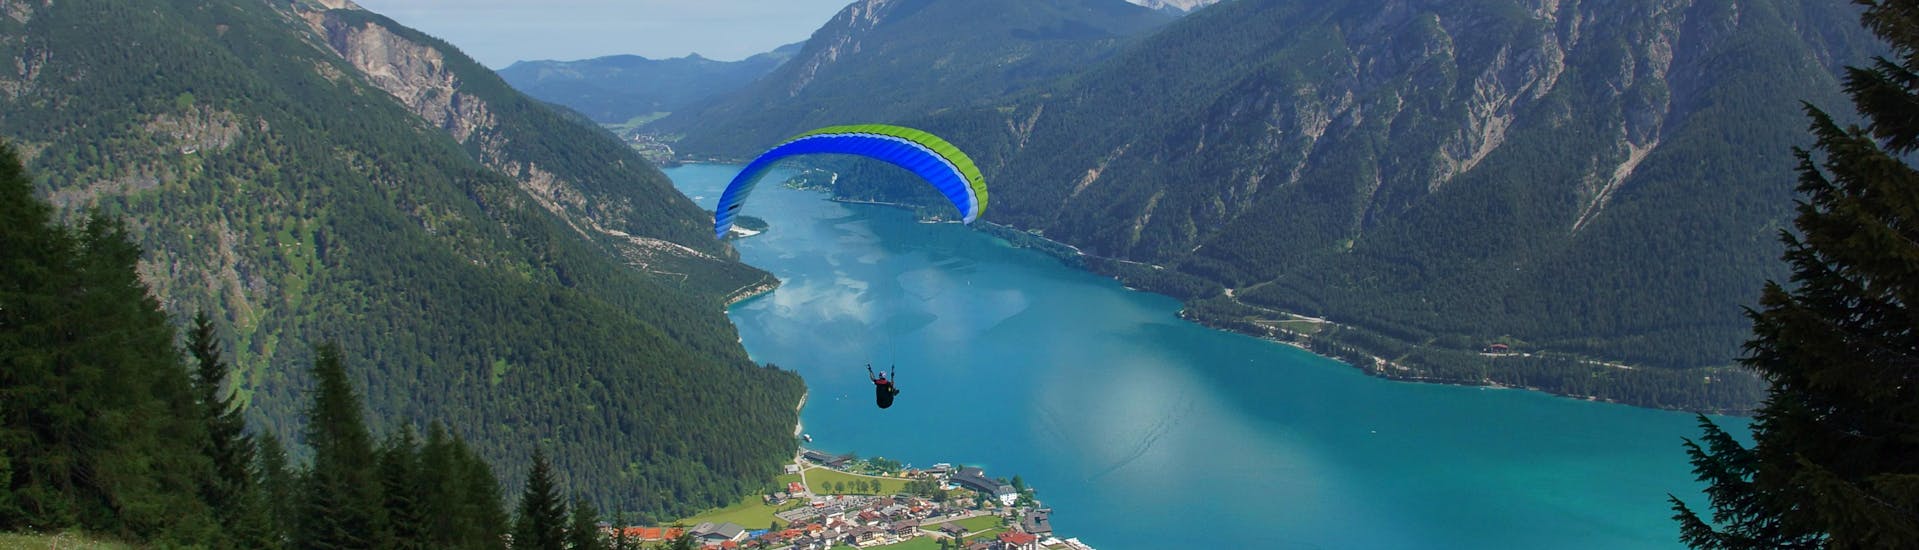 Maurach: Een tandemvlucht vindt plaats in een van de hotspots voor paragliding.